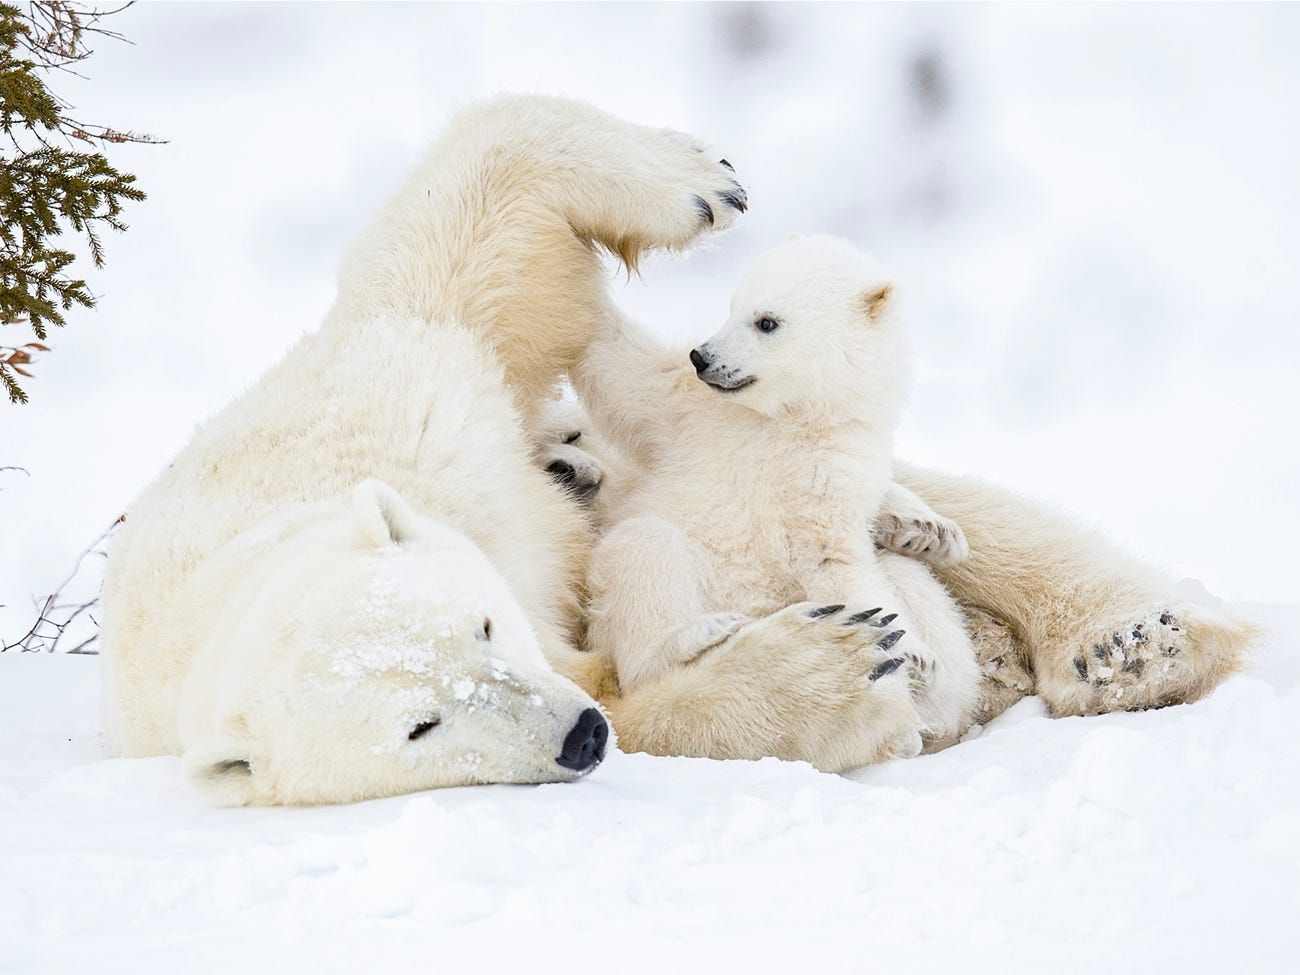 Gấu Bắc Cực là một chuyên gia săn mồi với tốc độ và sức mạnh phi thường. Nếu bạn muốn thấy một hình ảnh của gấu Bắc Cực săn mồi, hãy sẵn sàng để được choáng ngợp với những bức ảnh tuyệt đẹp này.